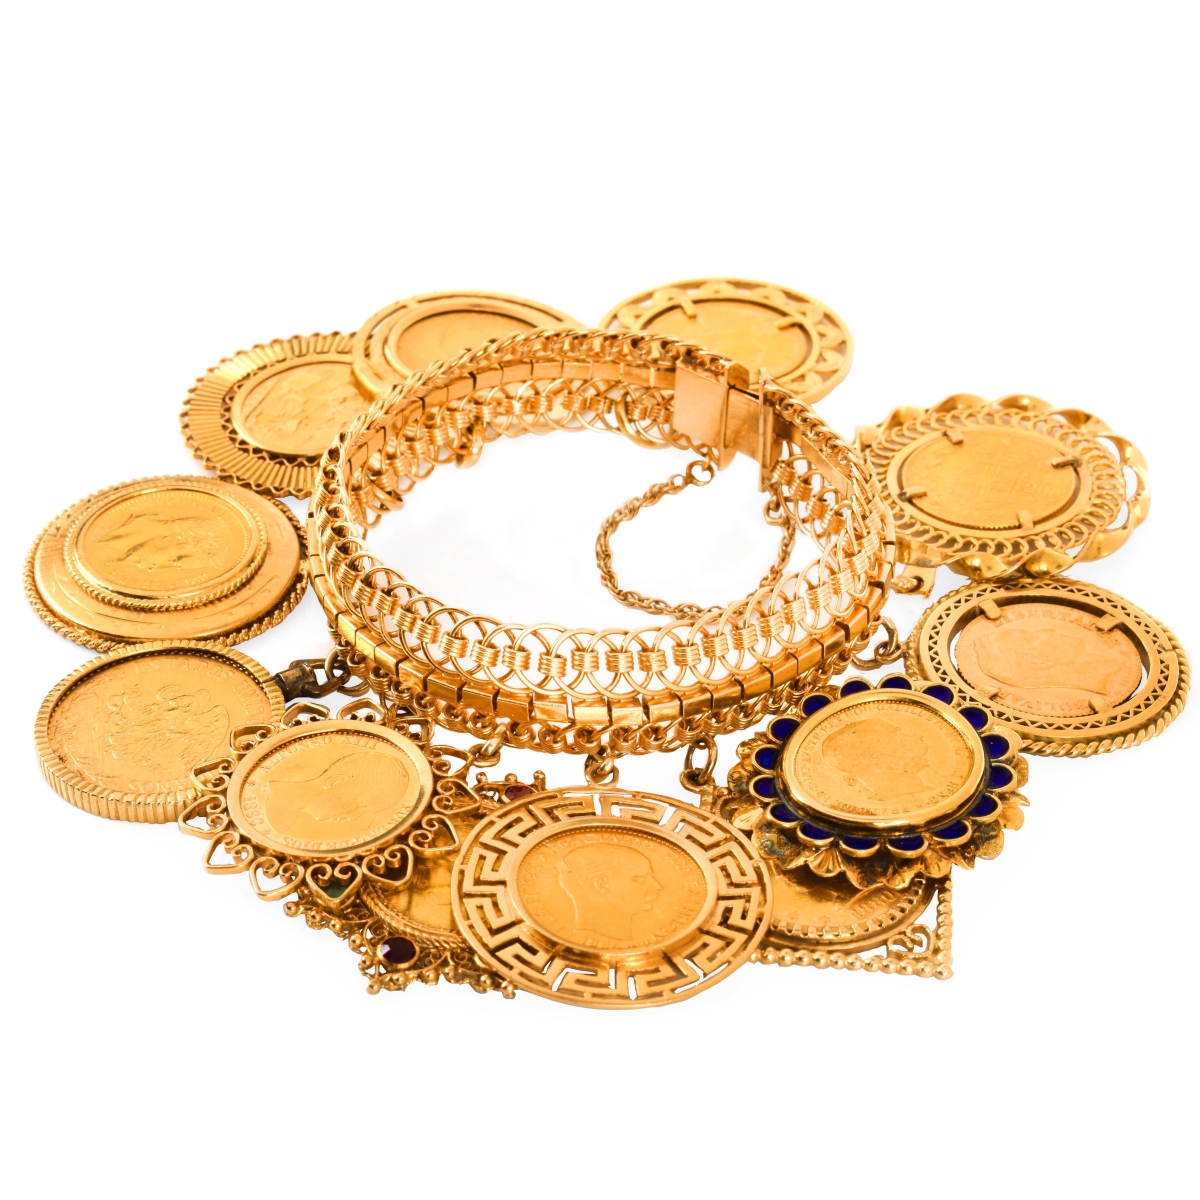 Vintage Gold Coin Charm Bracelet - Image 2 of 6